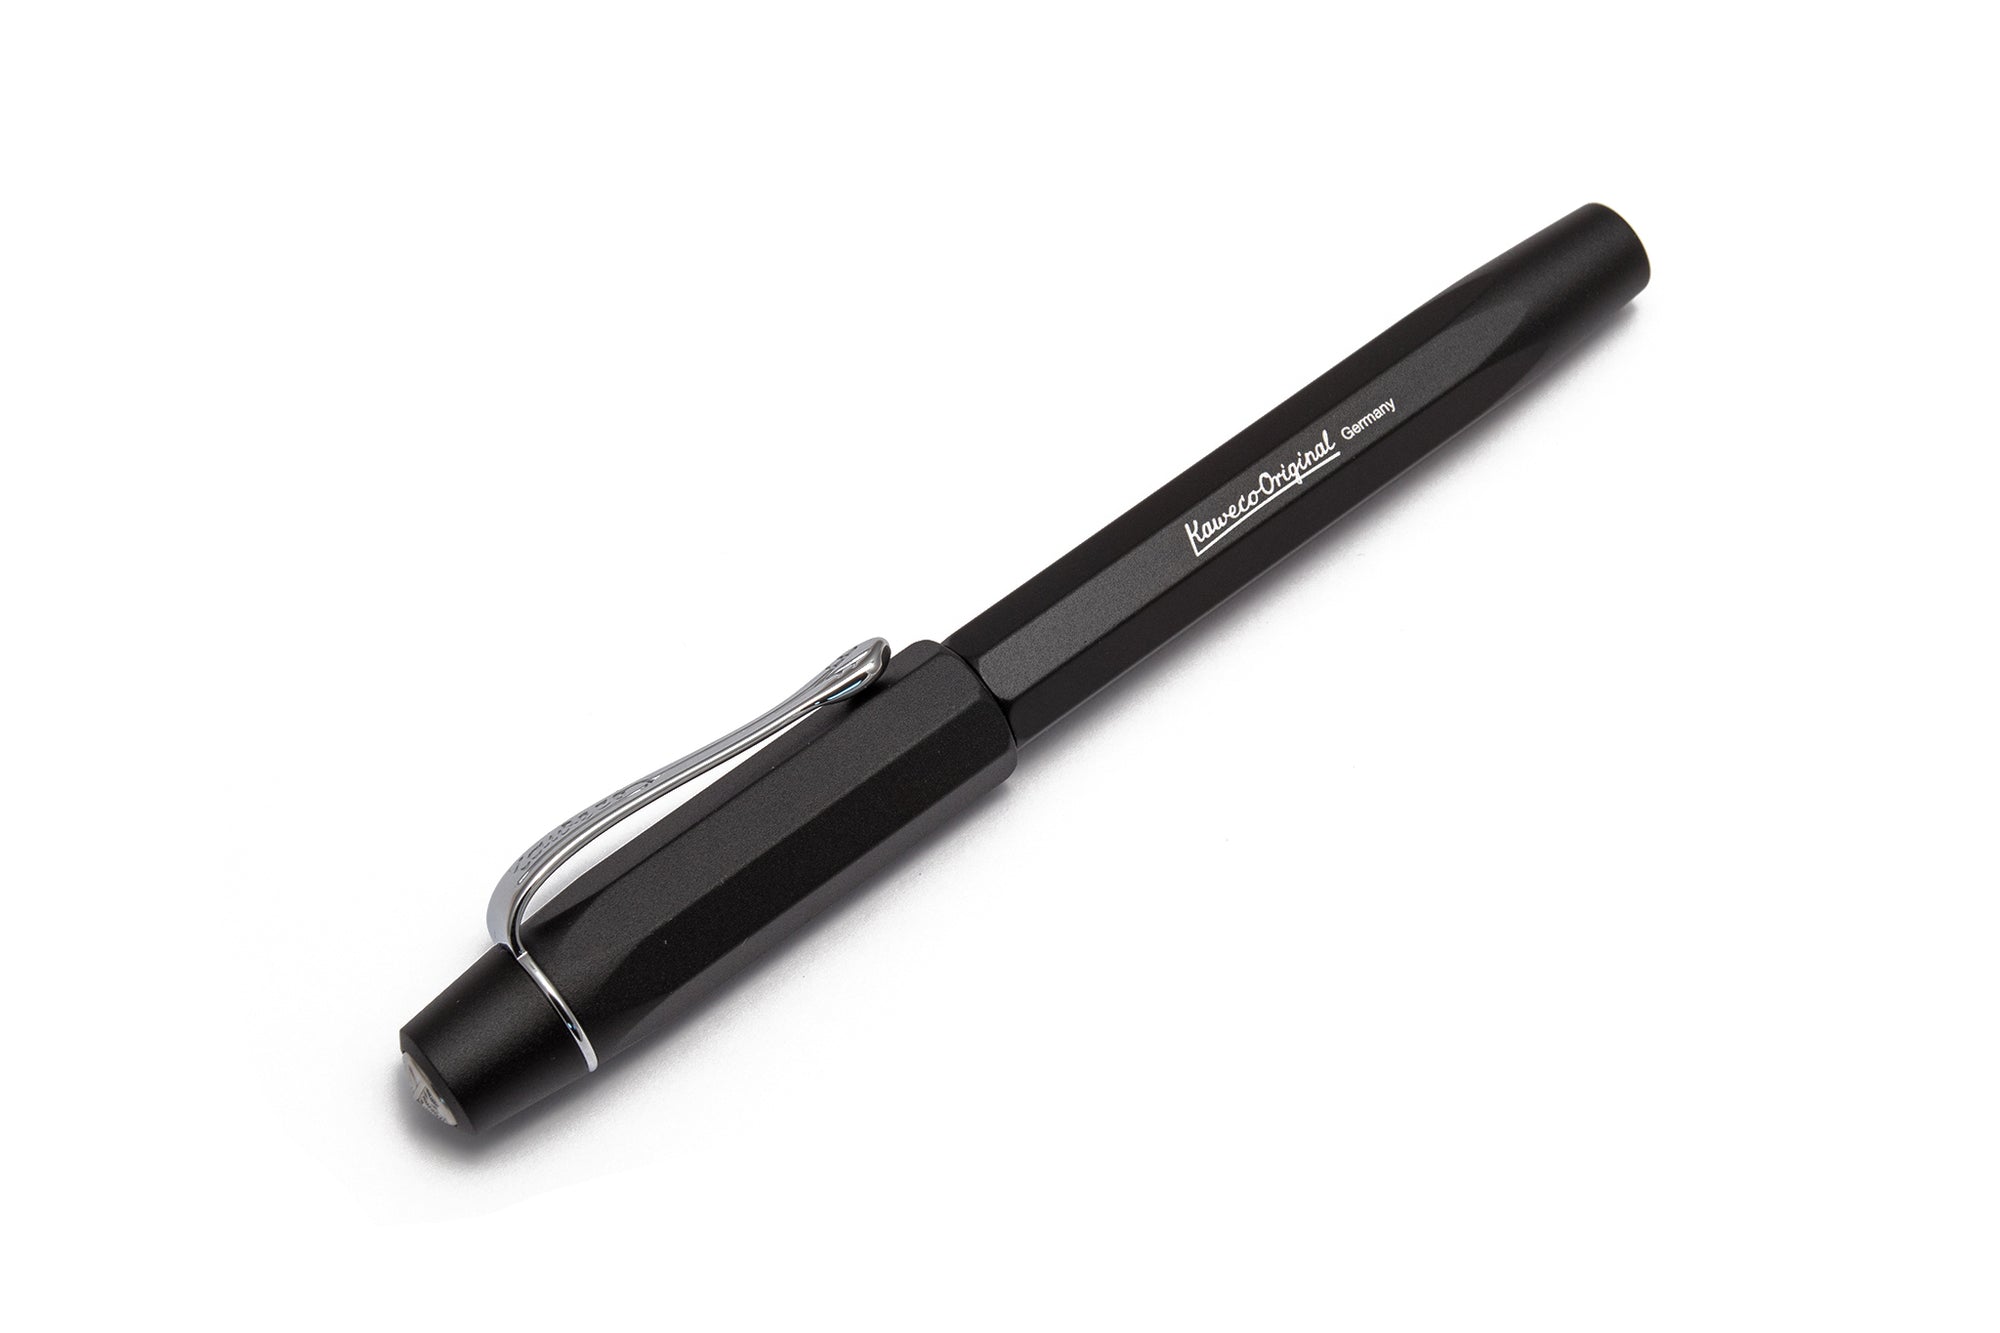 Shop Kaweco Pen Online - Discover High-Quality Premium Pen